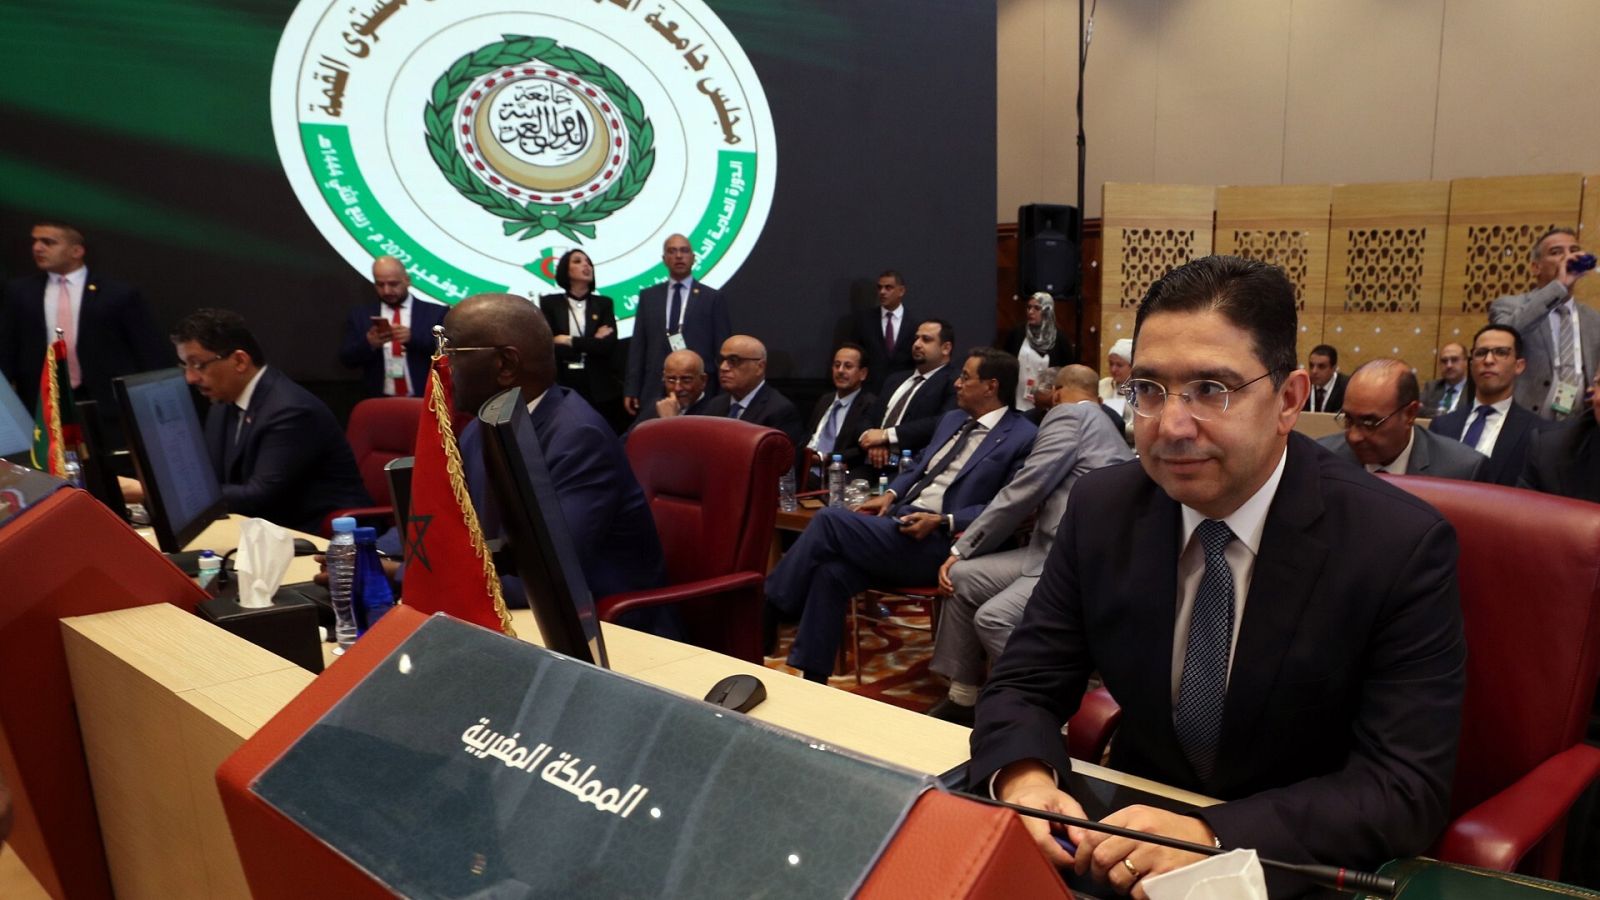 Mohamed VI invita al presidente argelino a un "diálogo" en Rabat